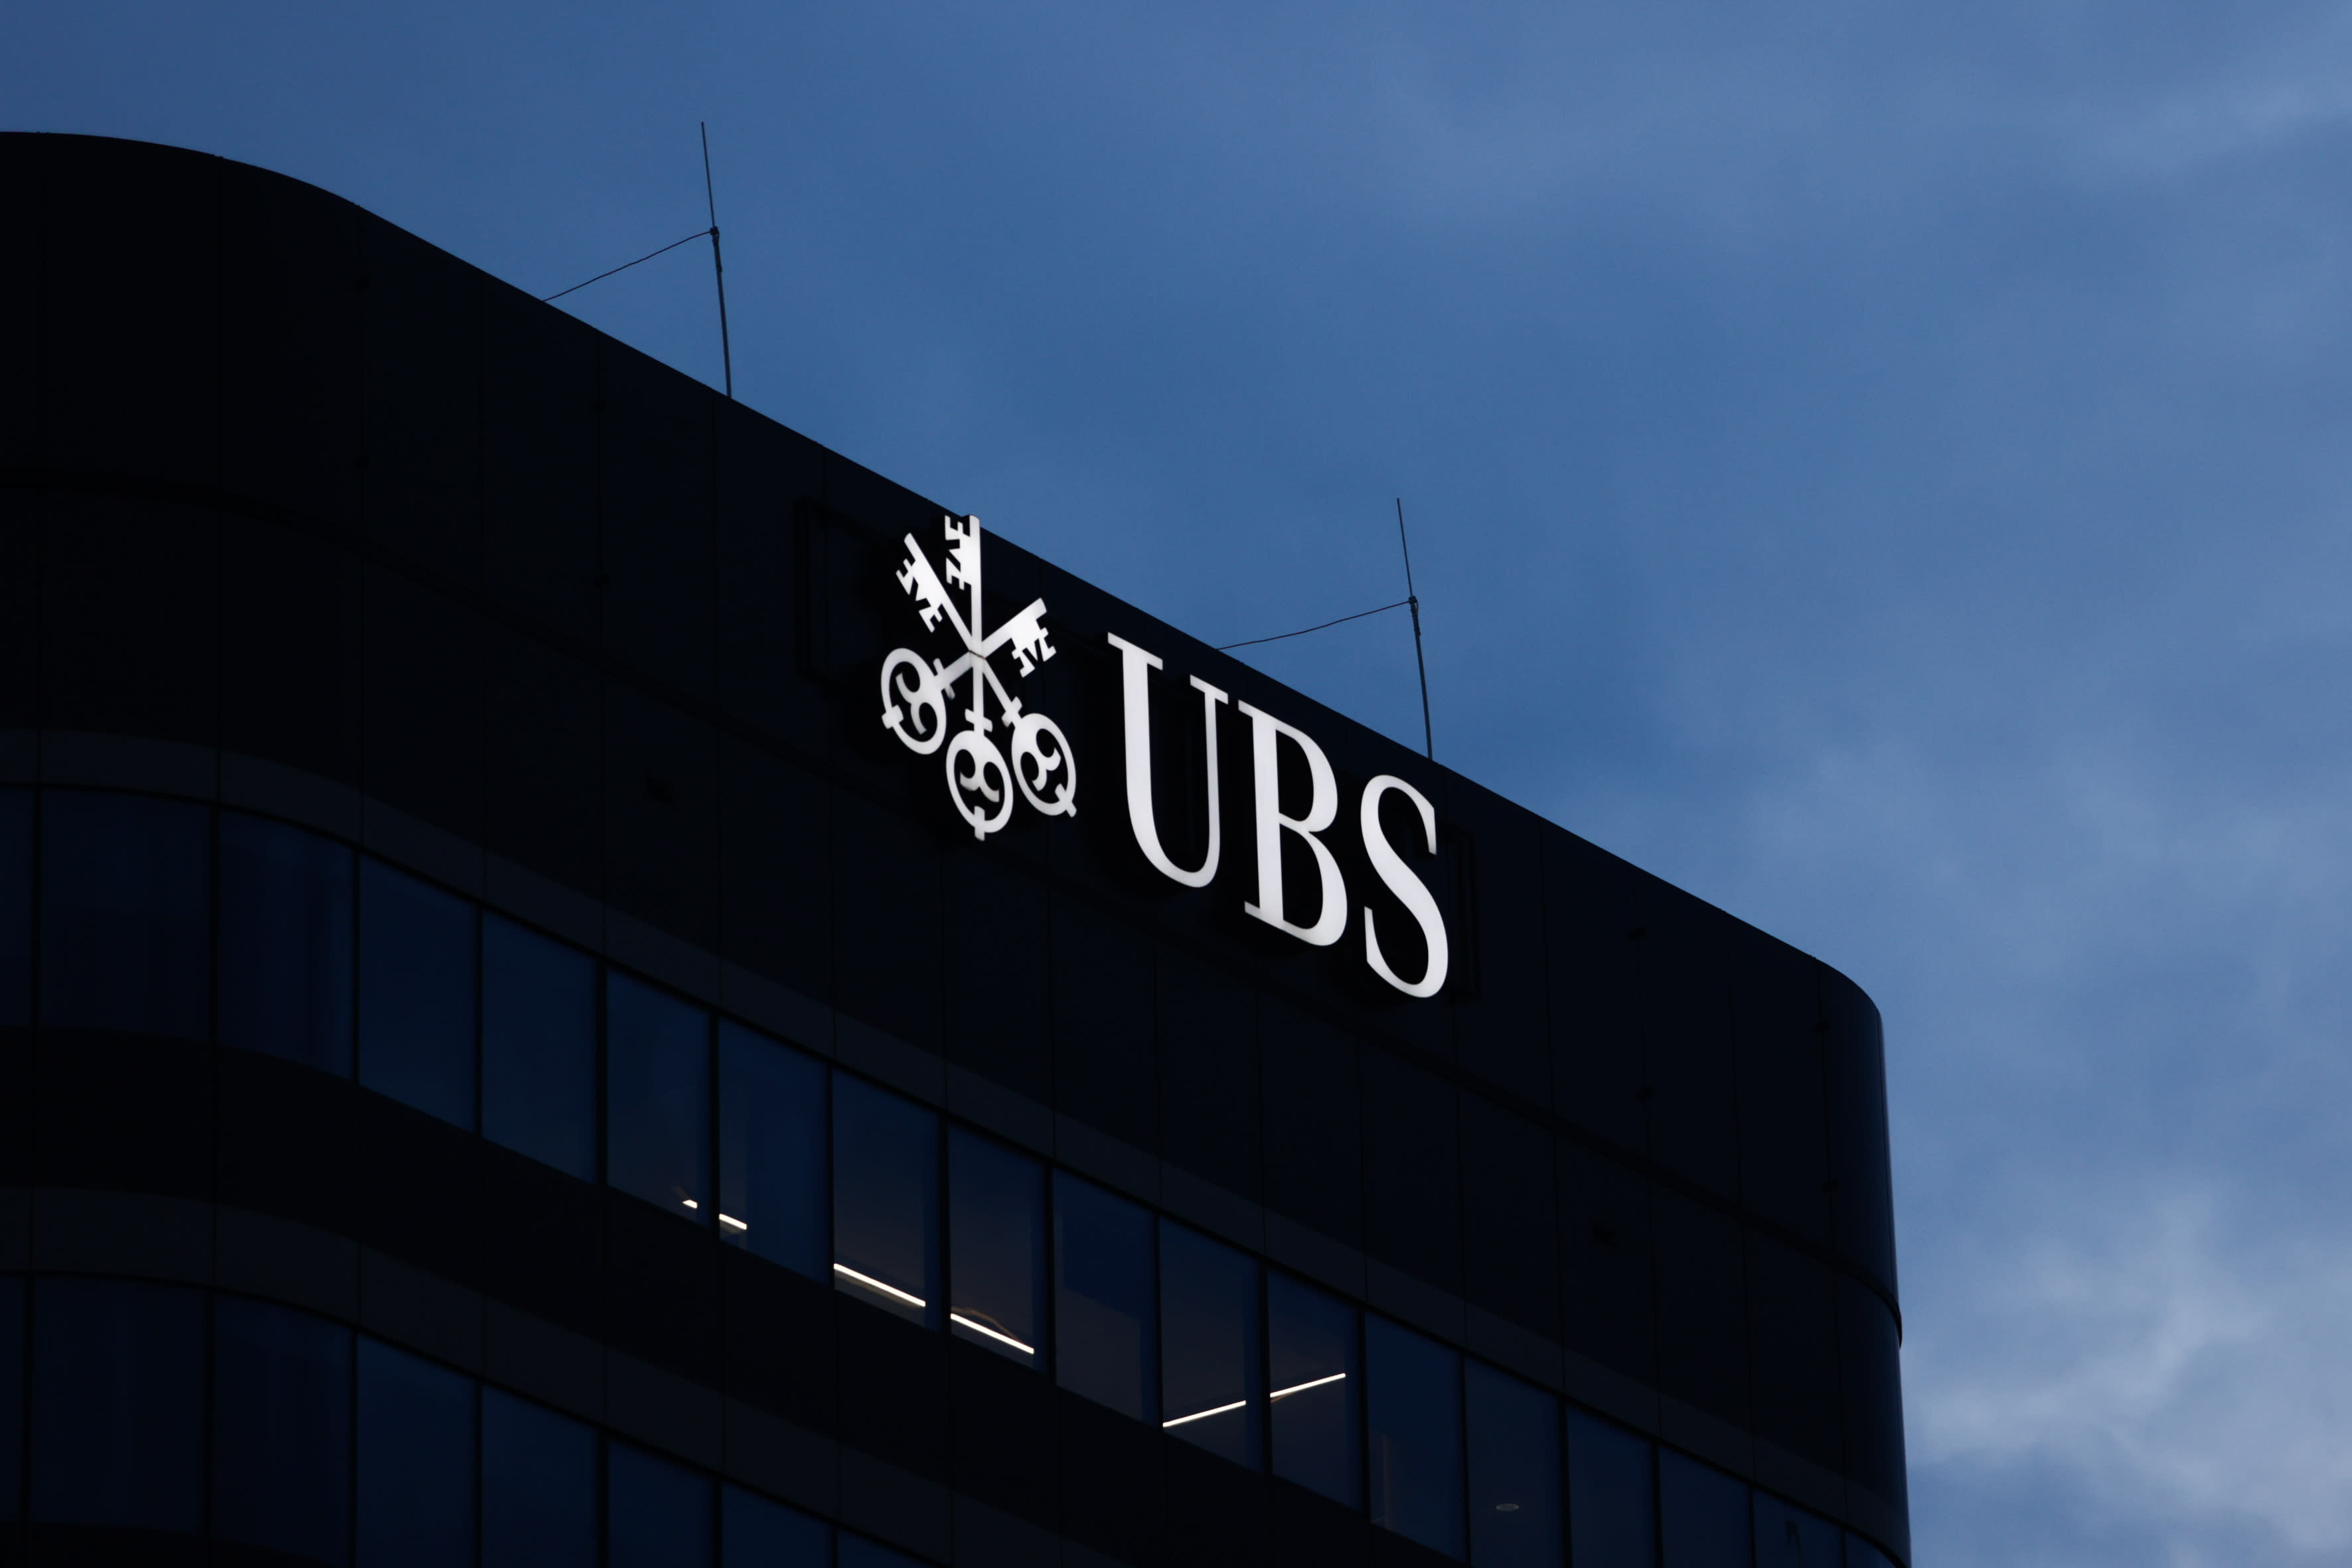 يعتزم عملاق البنوك السويسرية UBS إطلاق عملية إعادة شراء أسهم بقيمة تصل إلى 2 مليار دولار